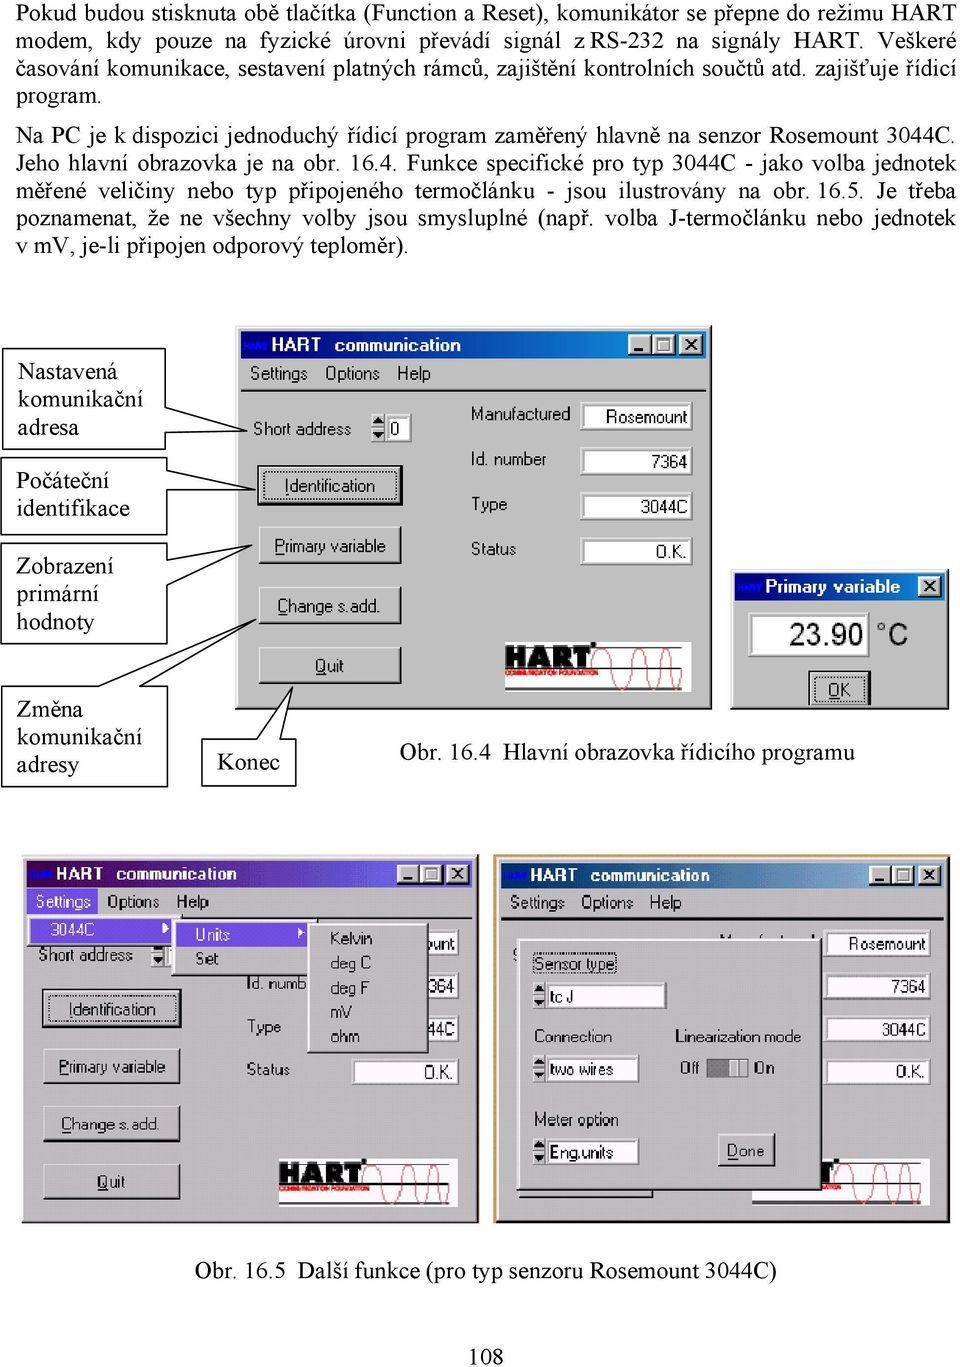 Na PC je k dispozici jednoduchý řídicí program zaměřený hlavně na senzor Rosemount 3044